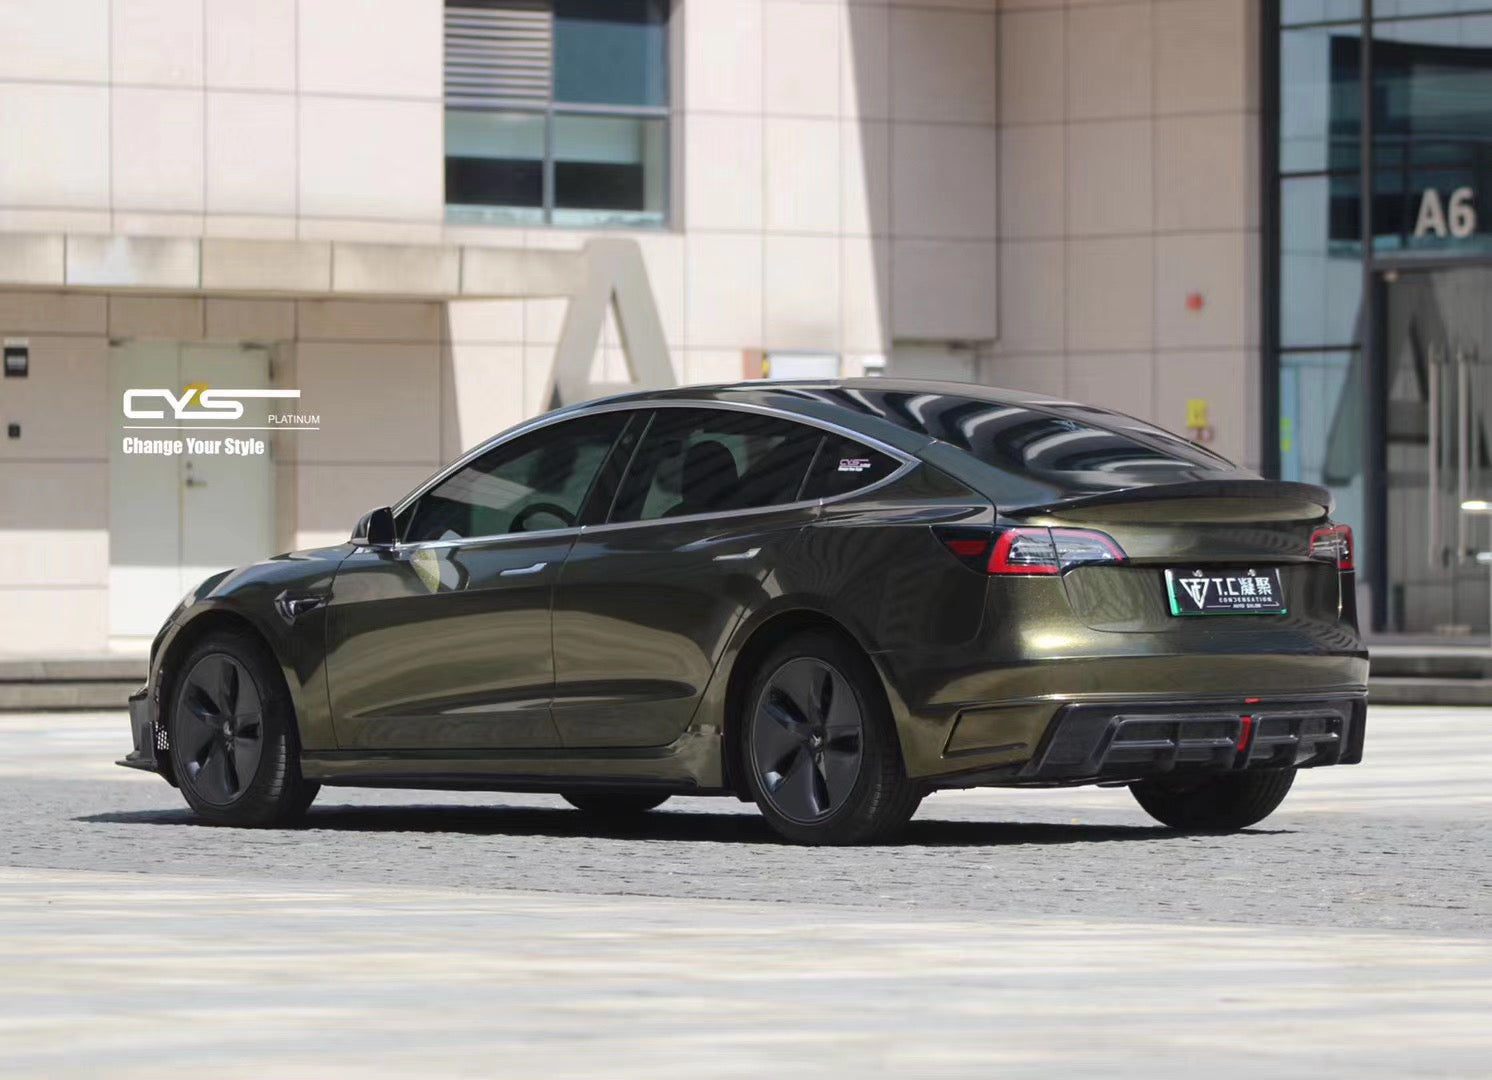 CMST Tuning Carbon Fiber Full Body Kit Style D for Tesla Model 3